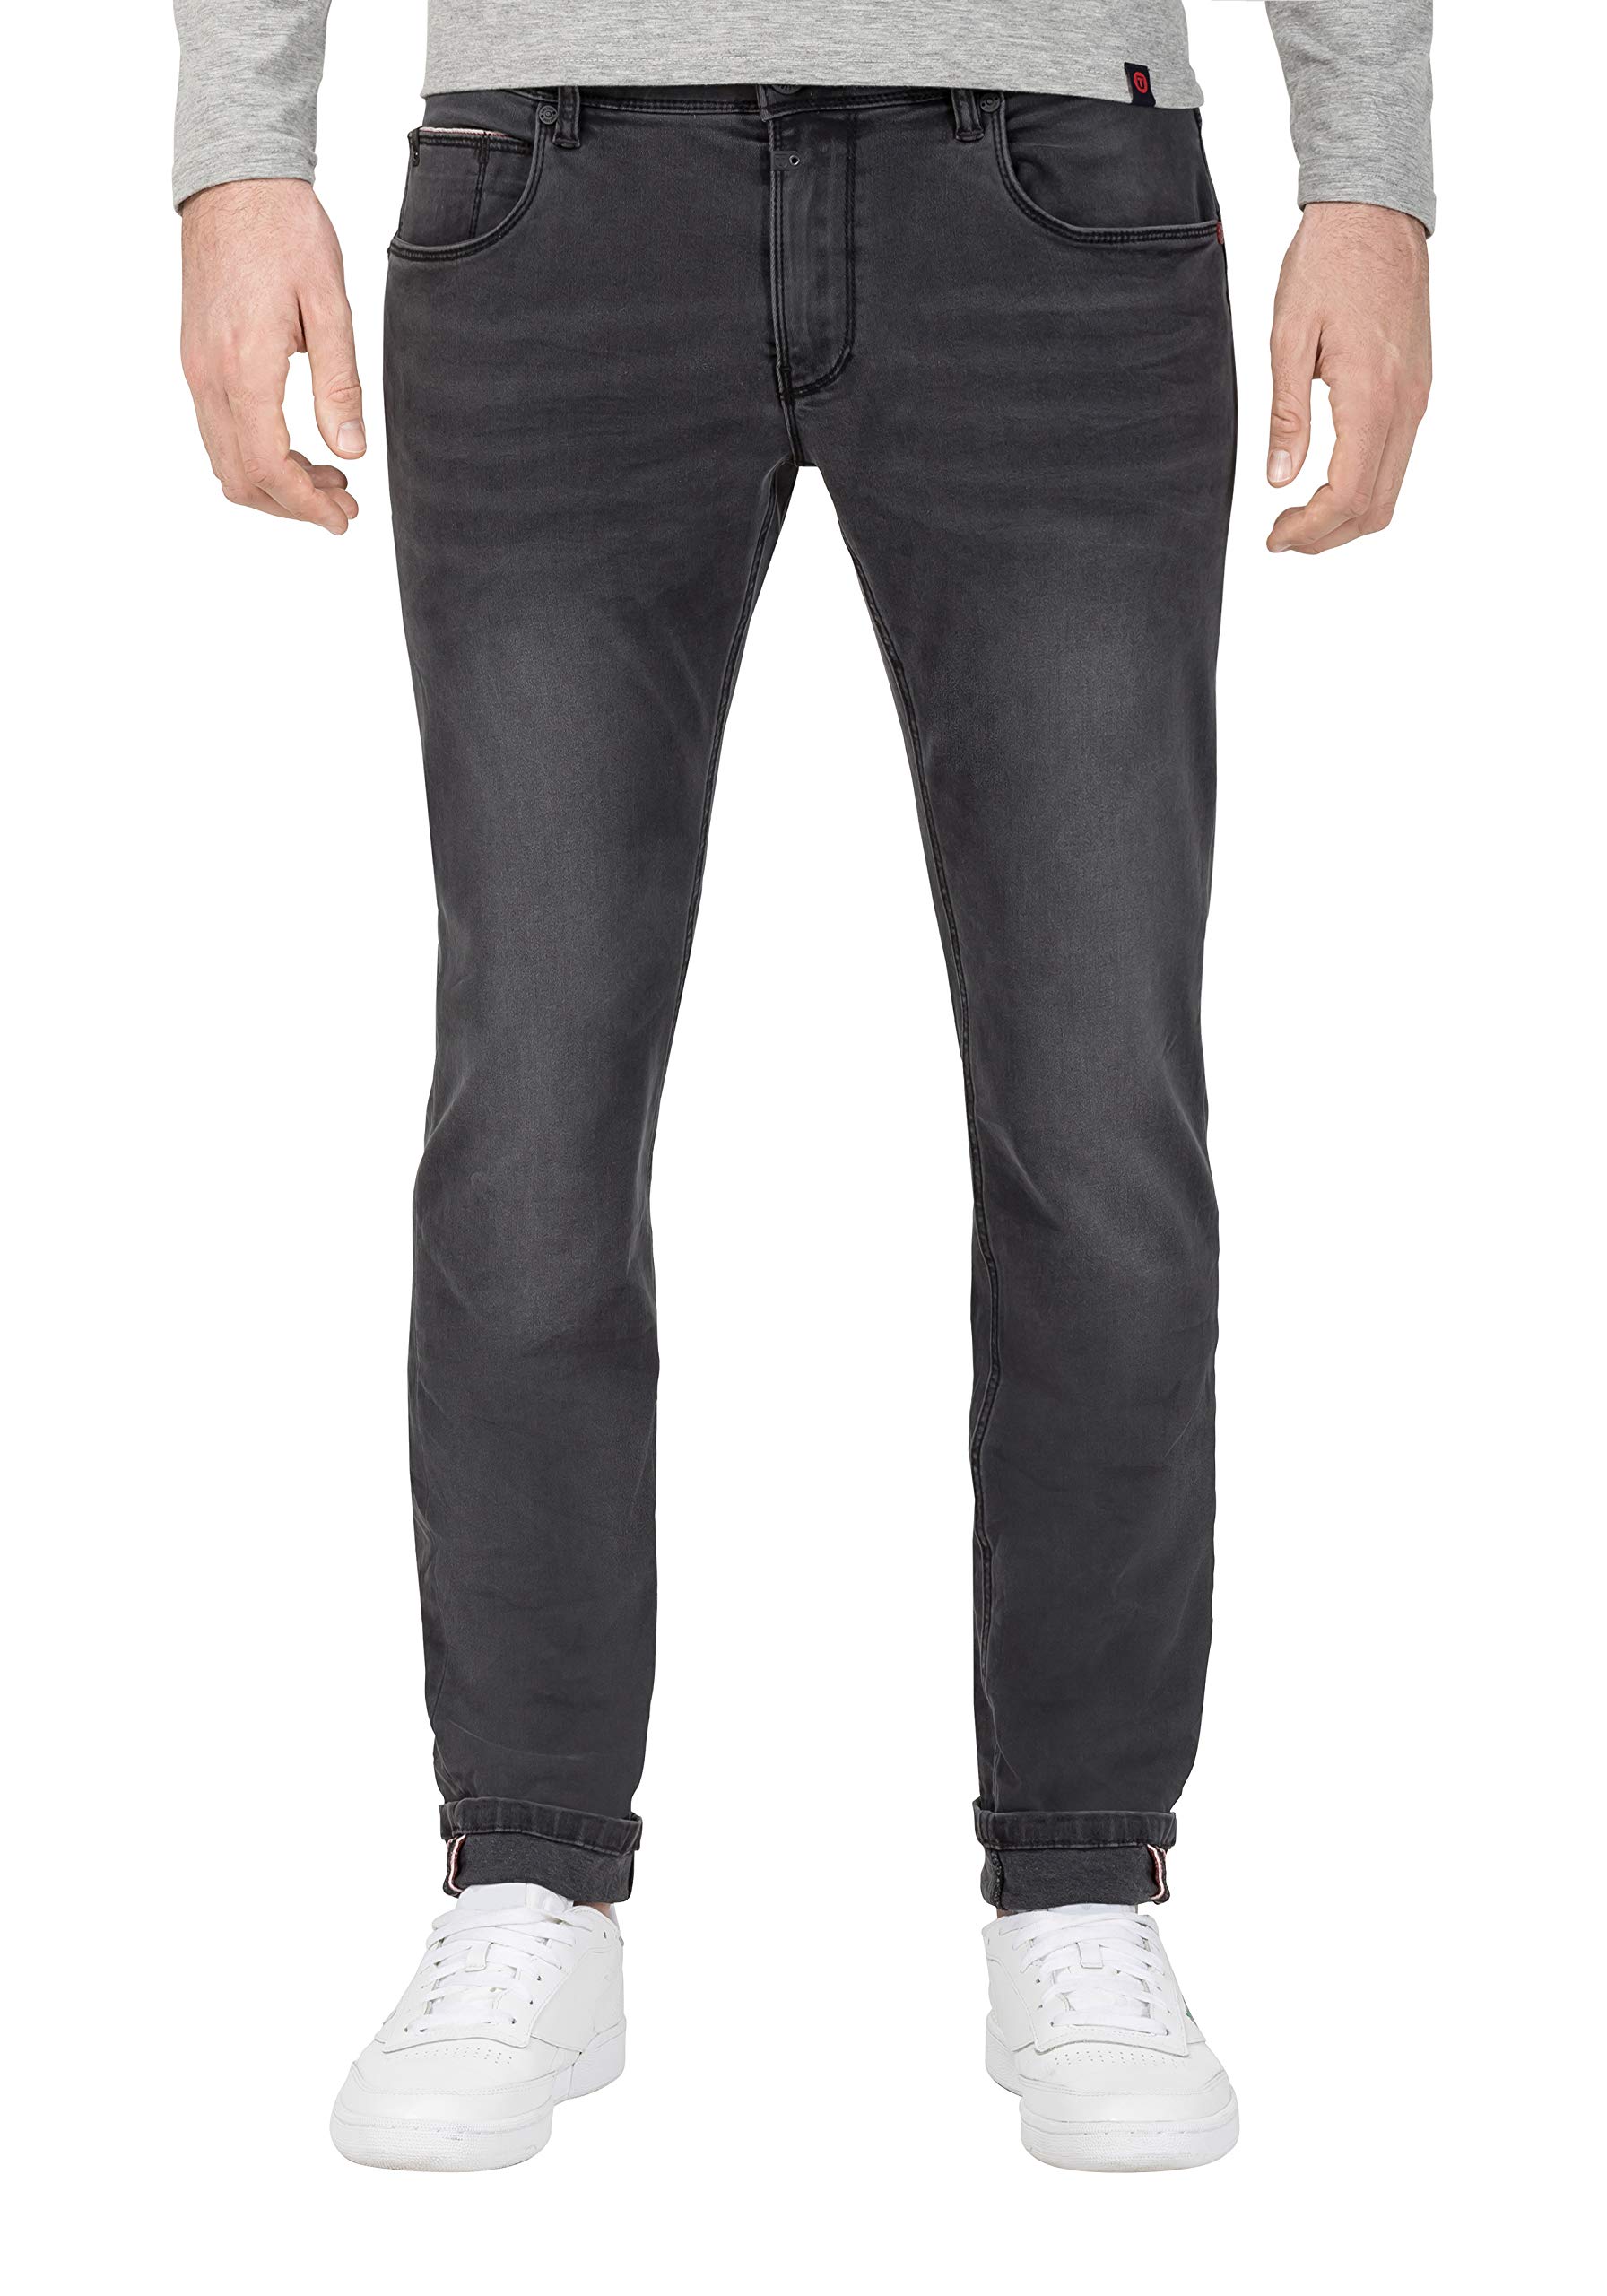 Timezone Herren Slim Scotttz Skinny Jeans, Grau (Anthra Shadow Wash 8650), 34W / 34L EU